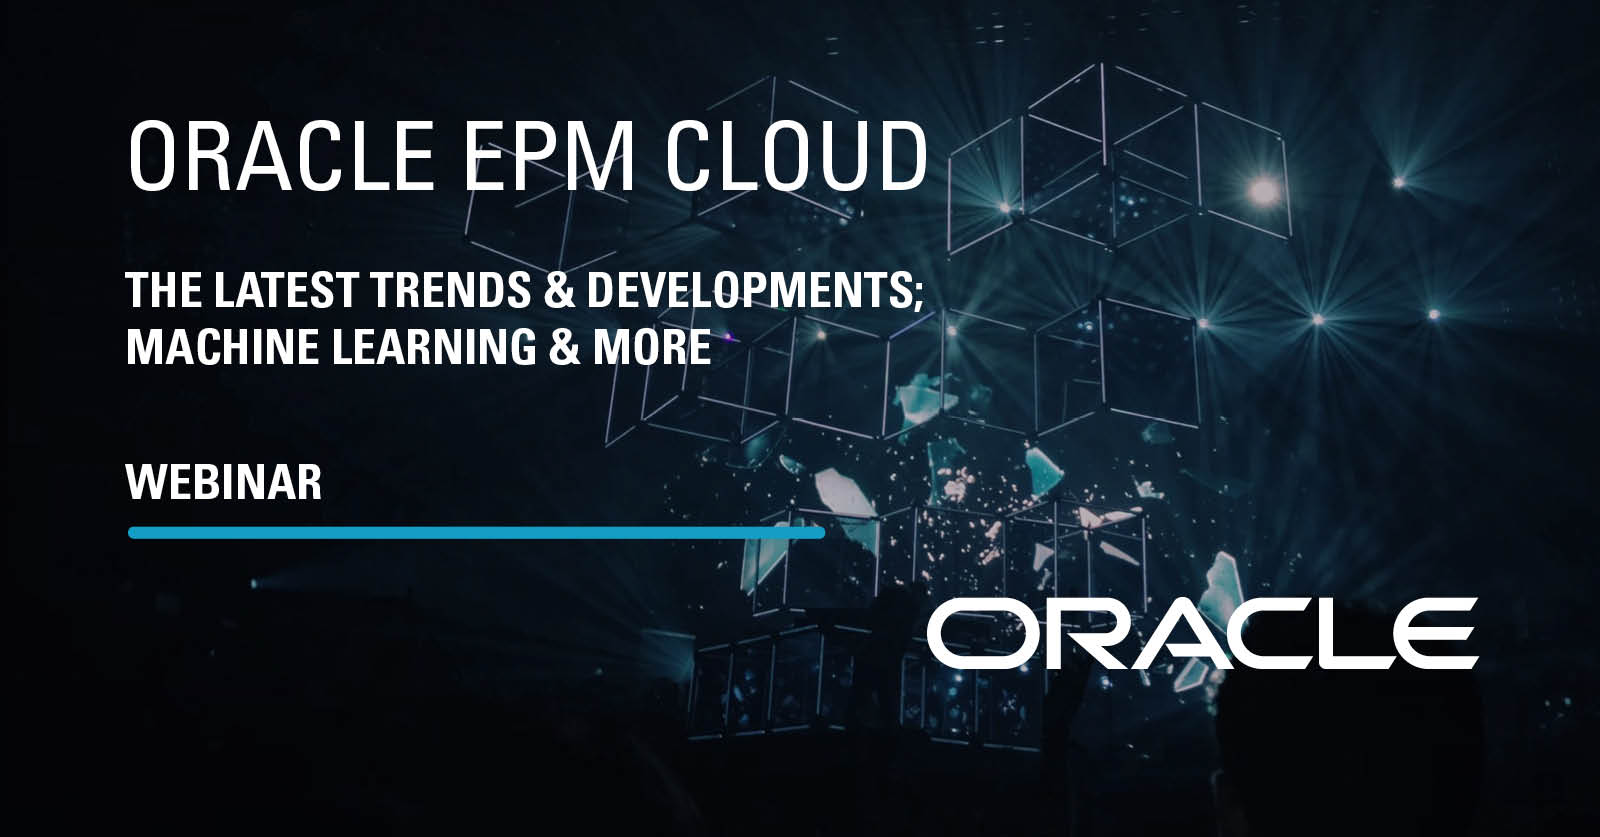 Webinar Oracle EPM Bloud - Machine learning & more